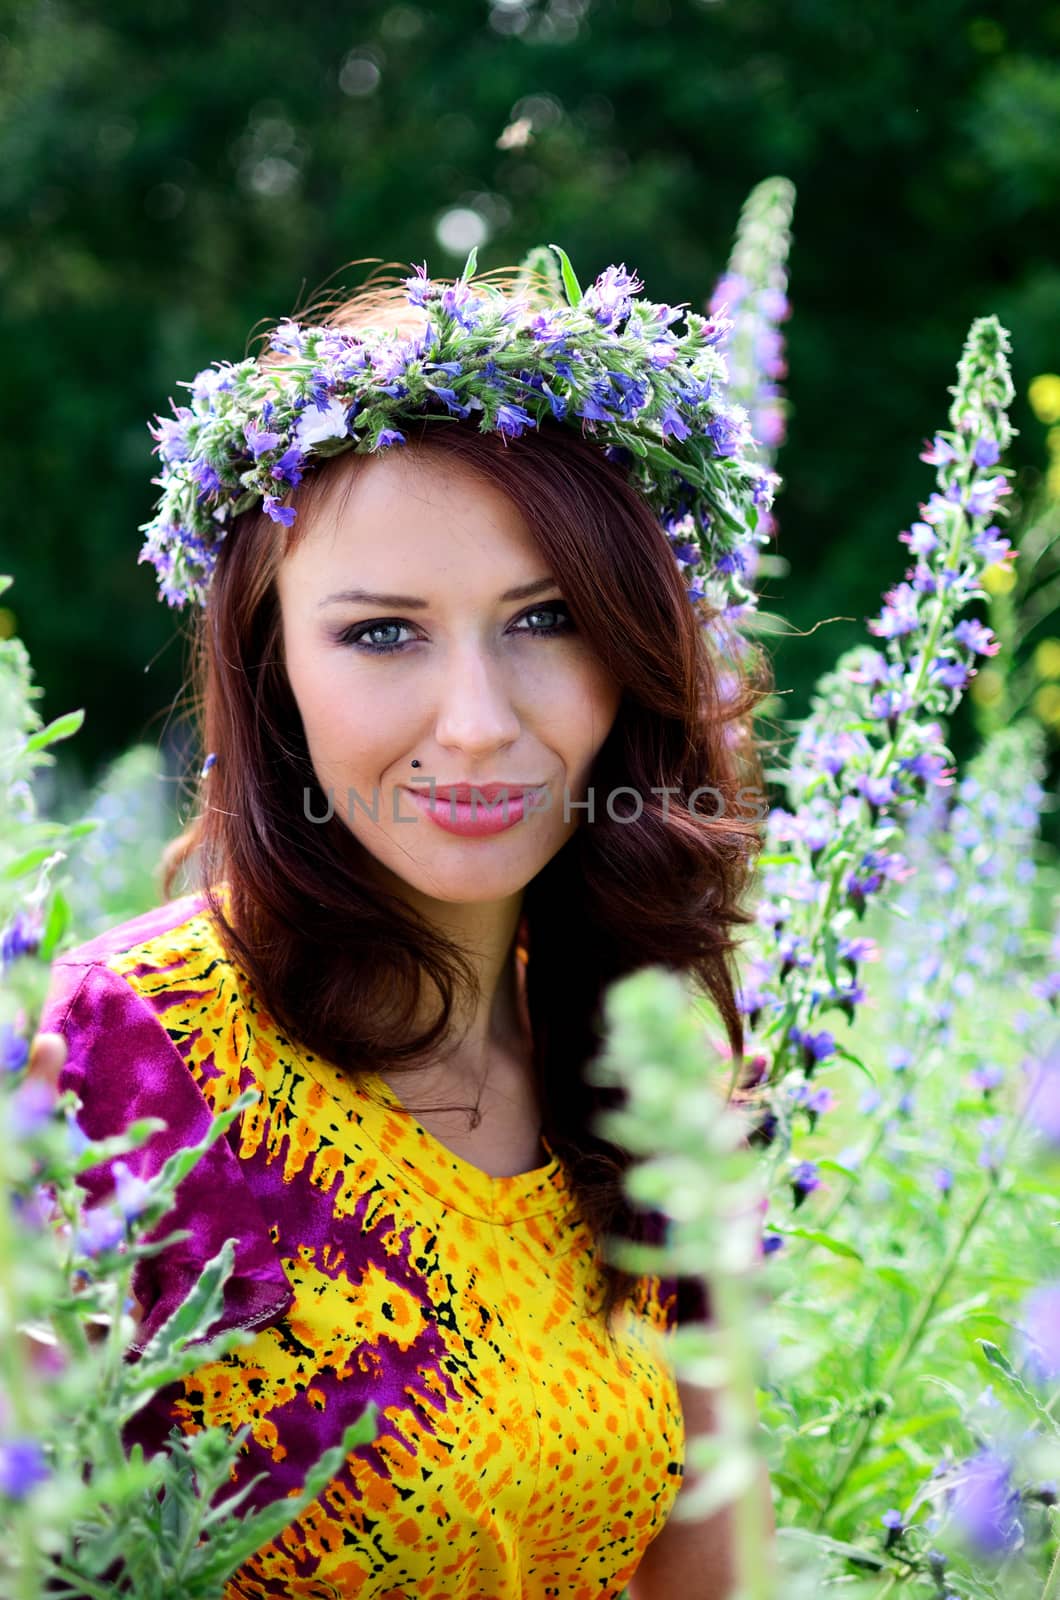 Girl with flowers' wreath by bartekchiny